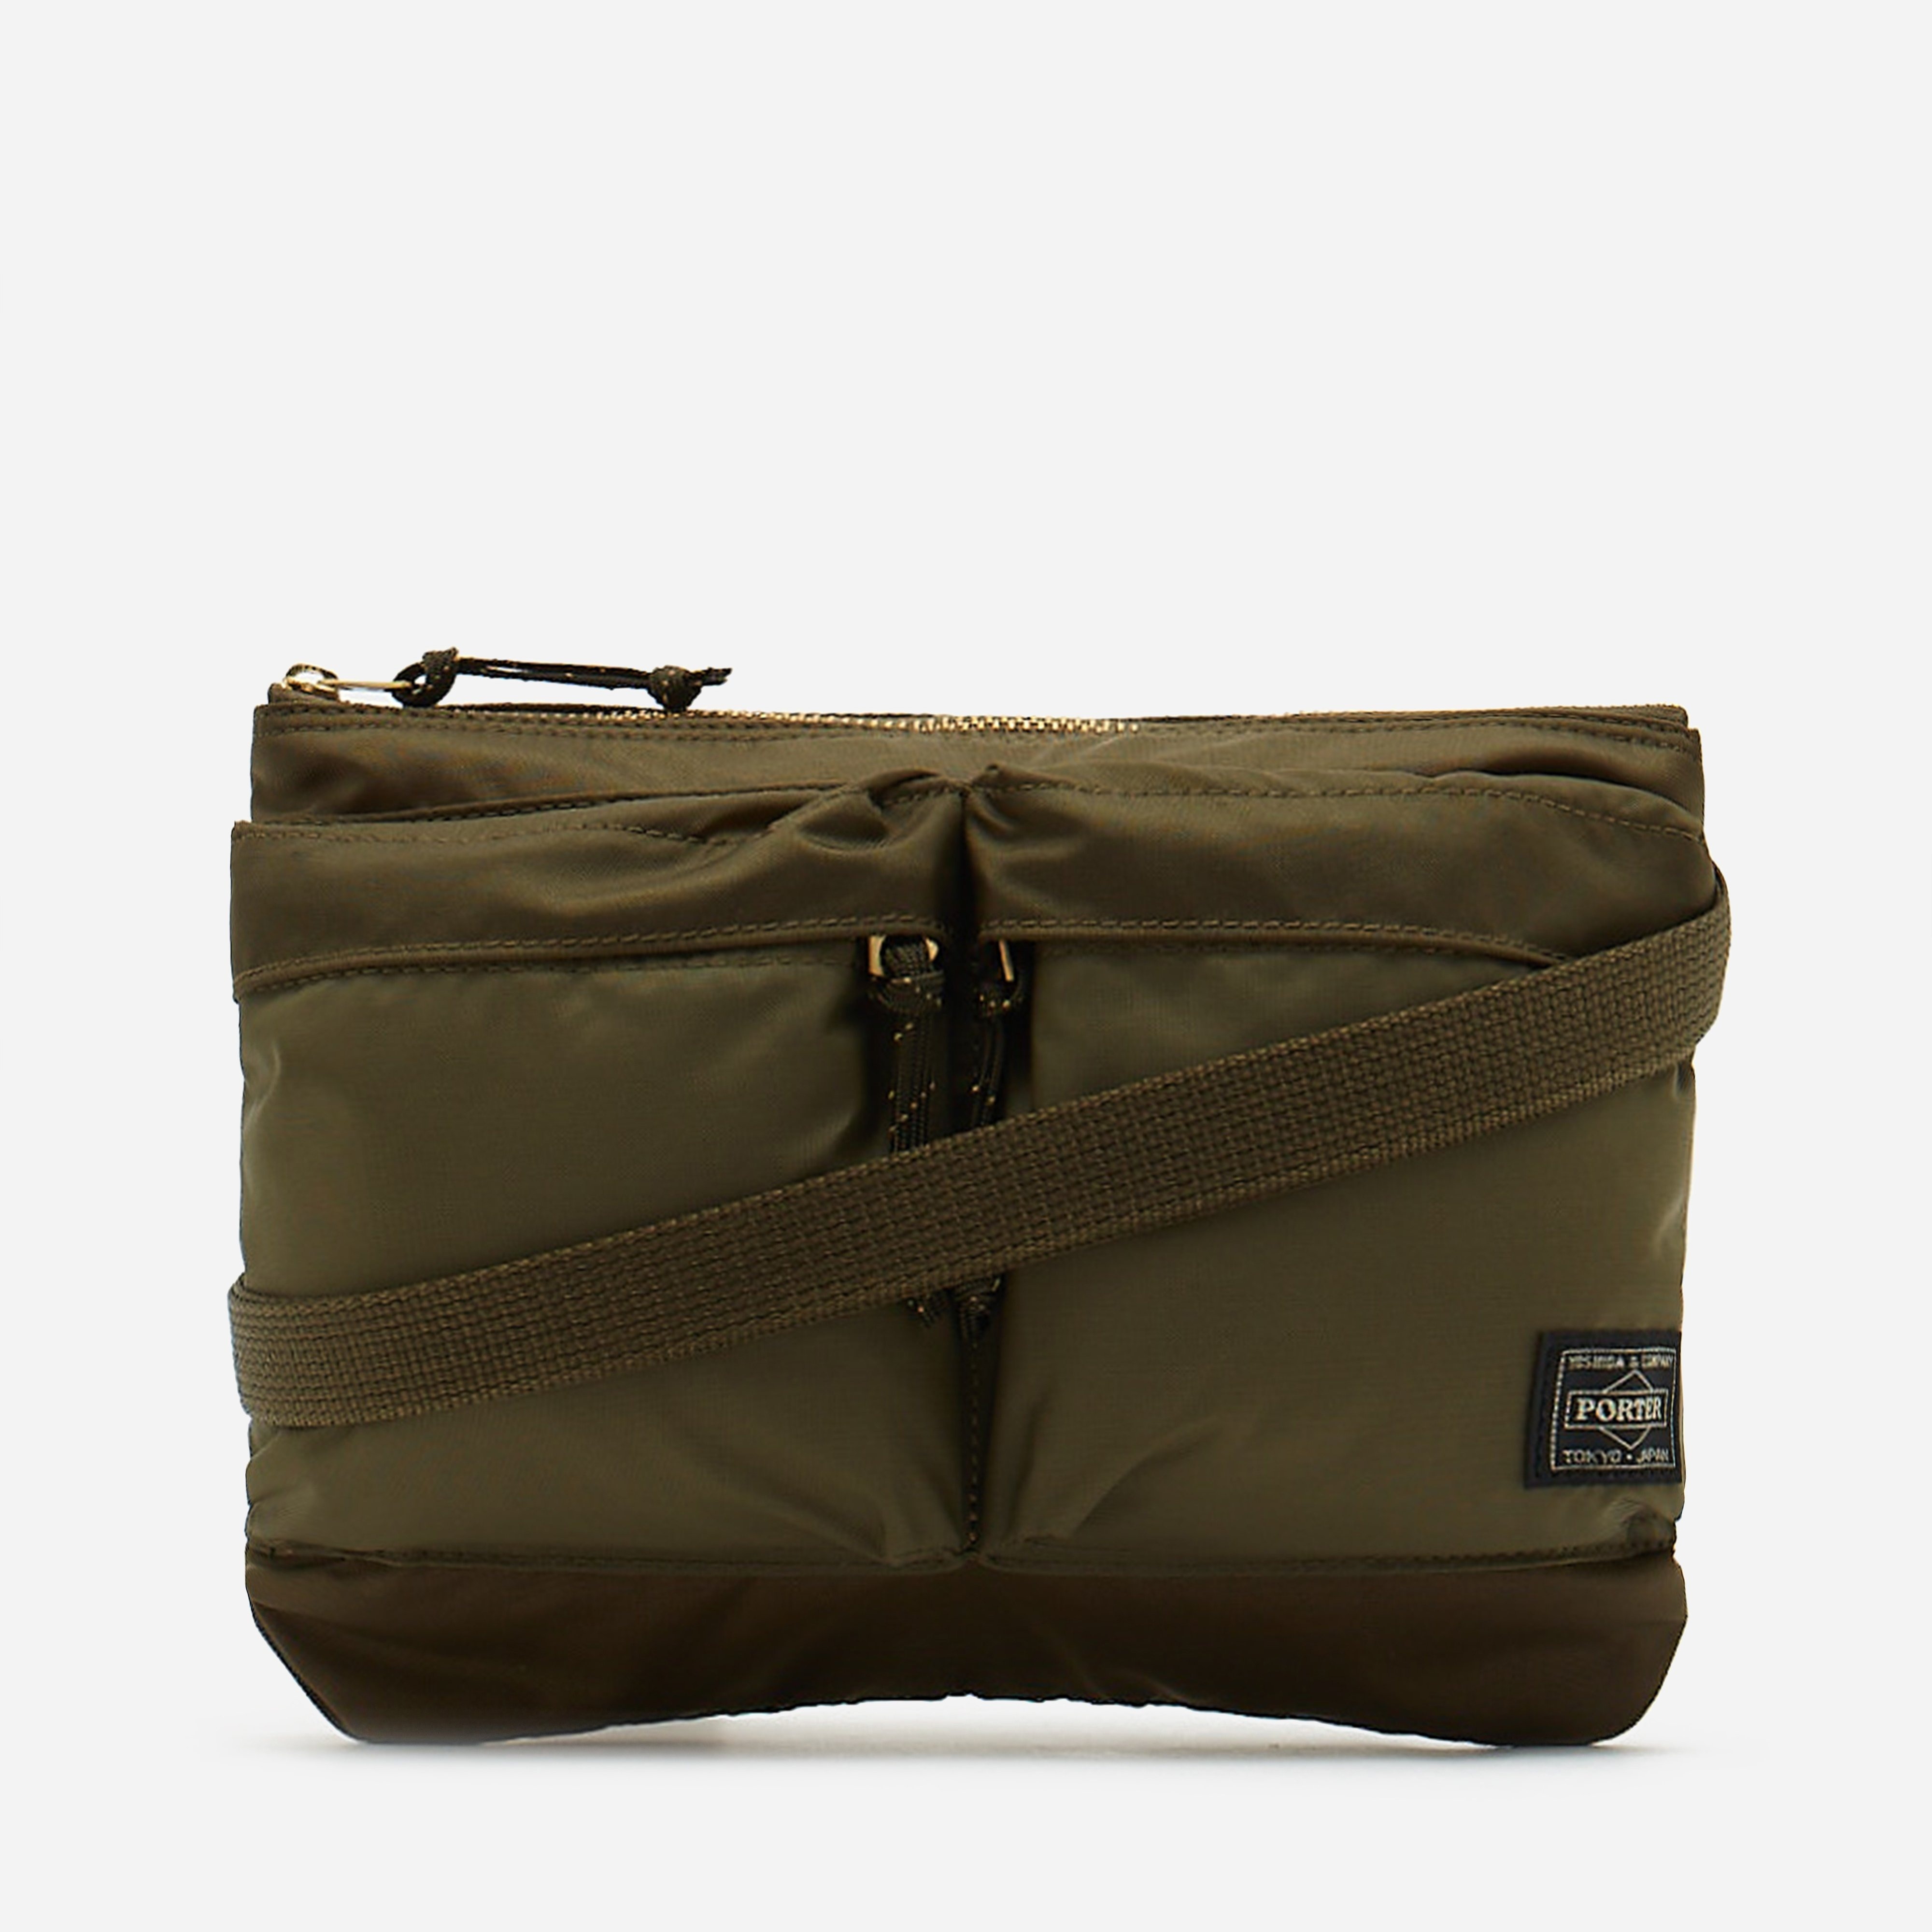 Porter-Yoshida & Co. Force Shoulder Bag - 2